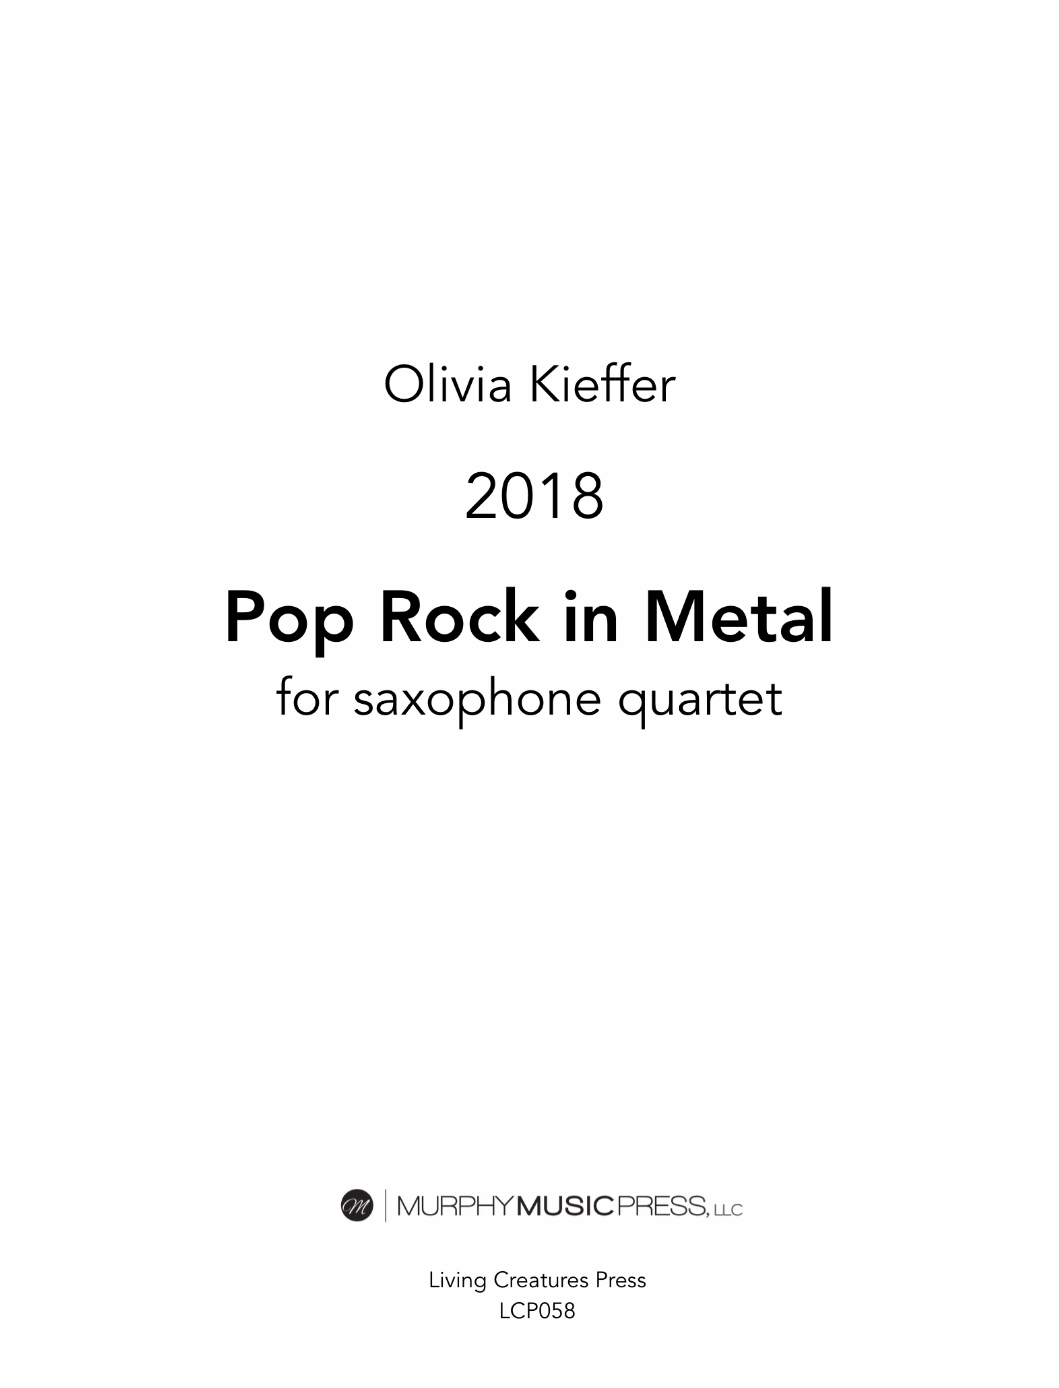 Pop Rock In Metal by Olivia Kieffer